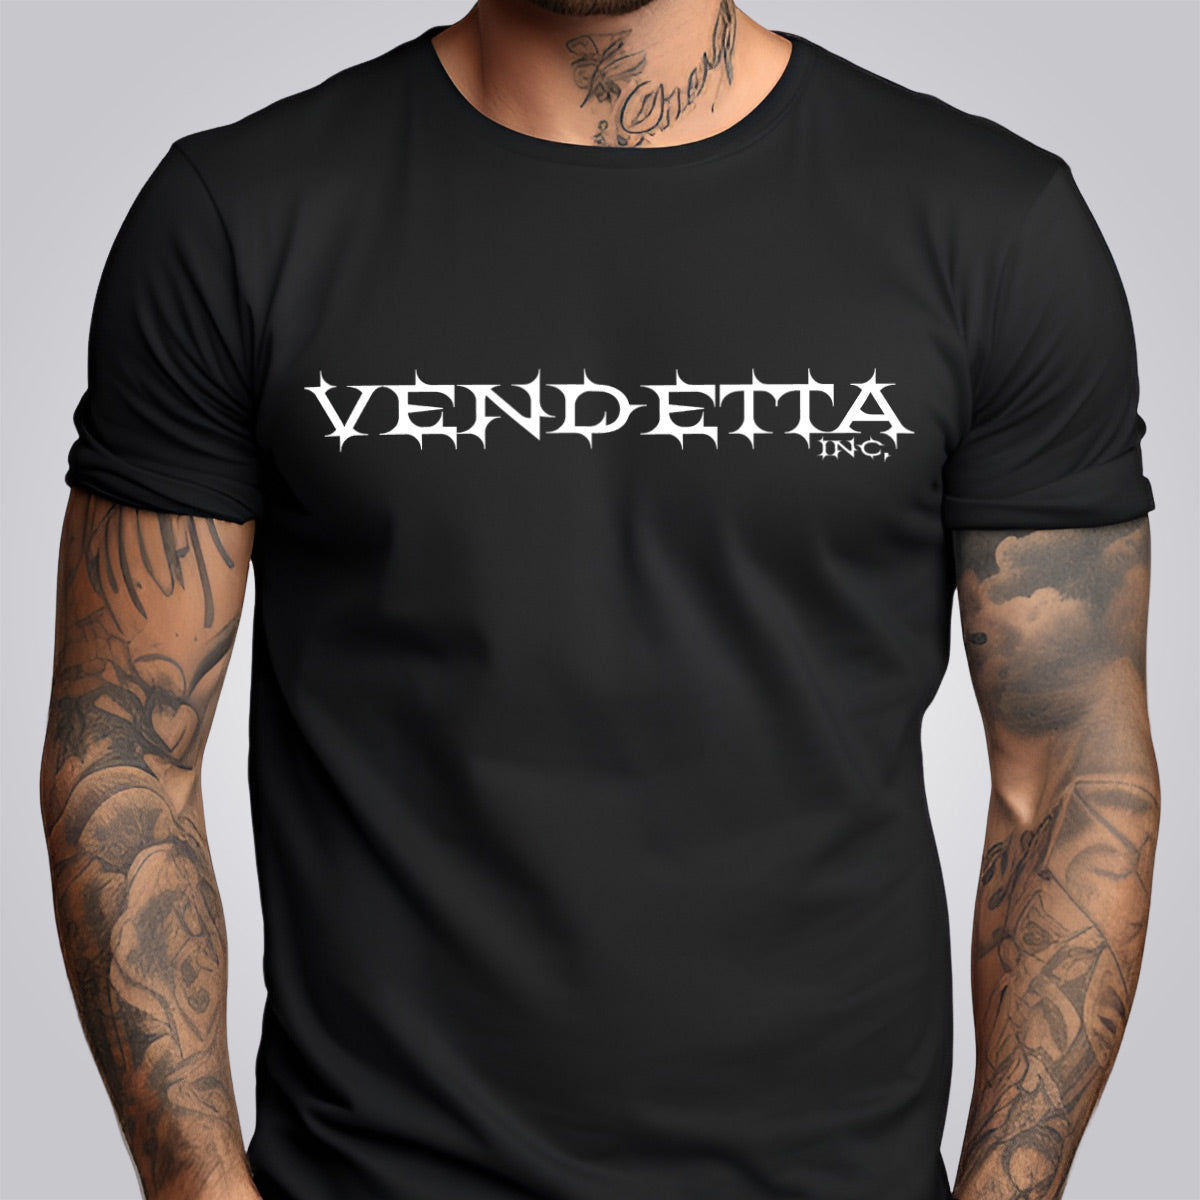 Vendetta Inc. Shirt black Skull Hand VD-1341